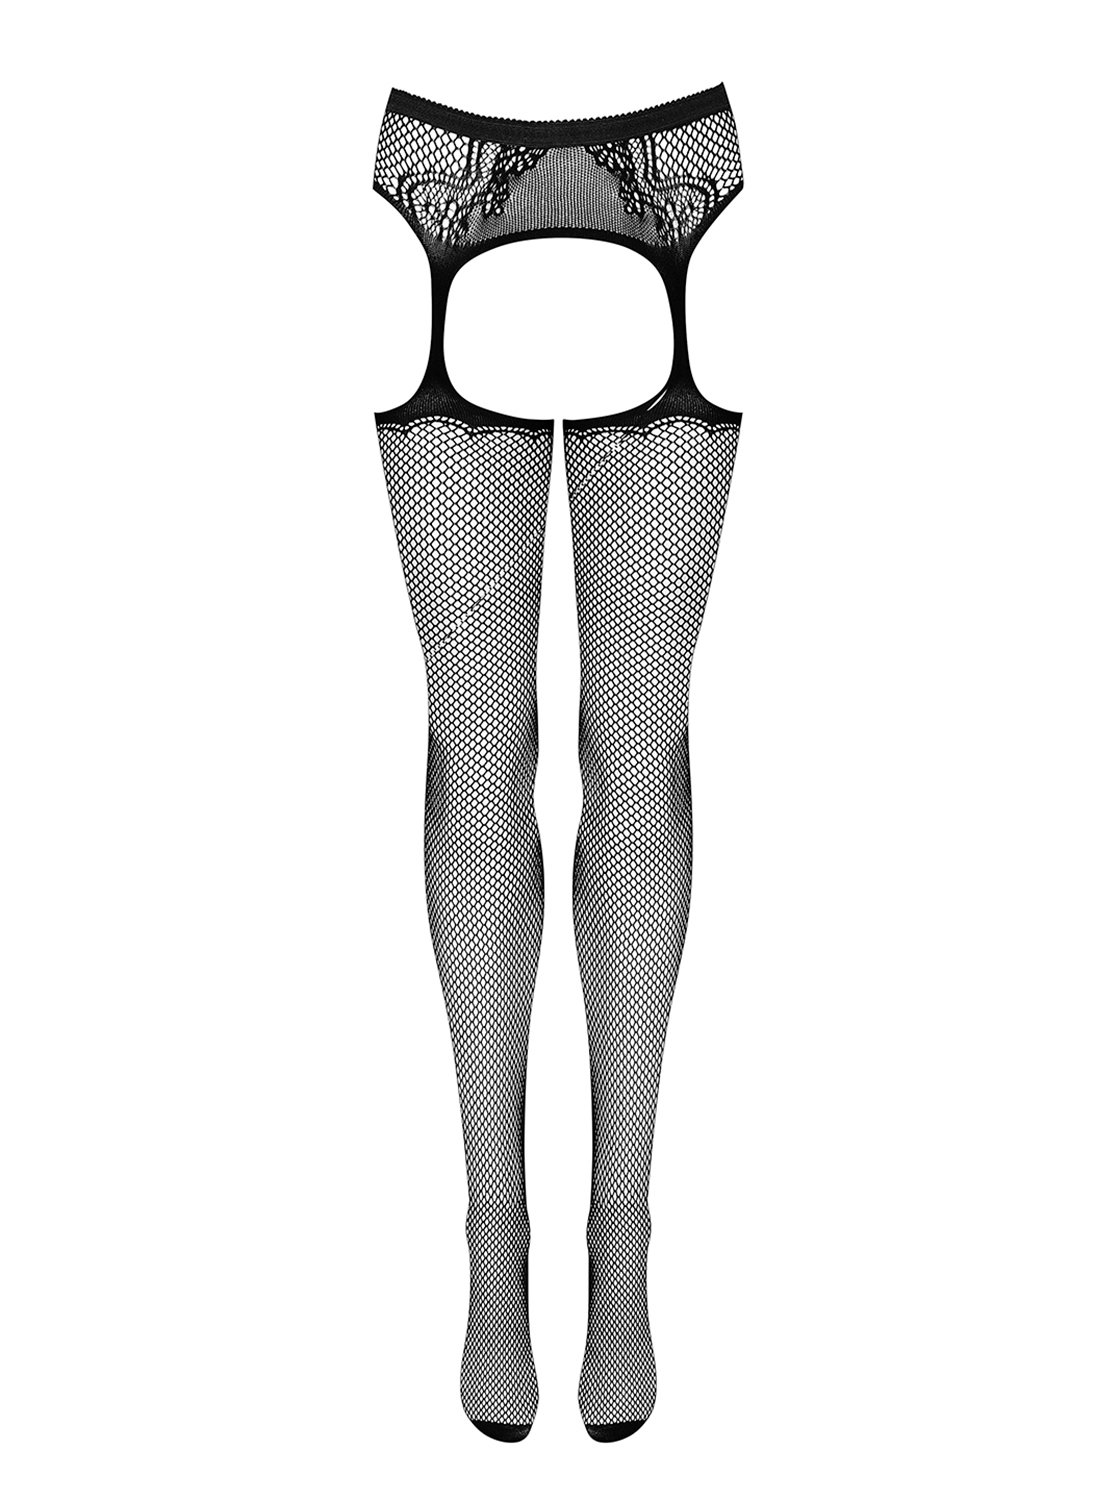 Podvazkový pás s punčochami Garter stockings S232 - Obssesive černá